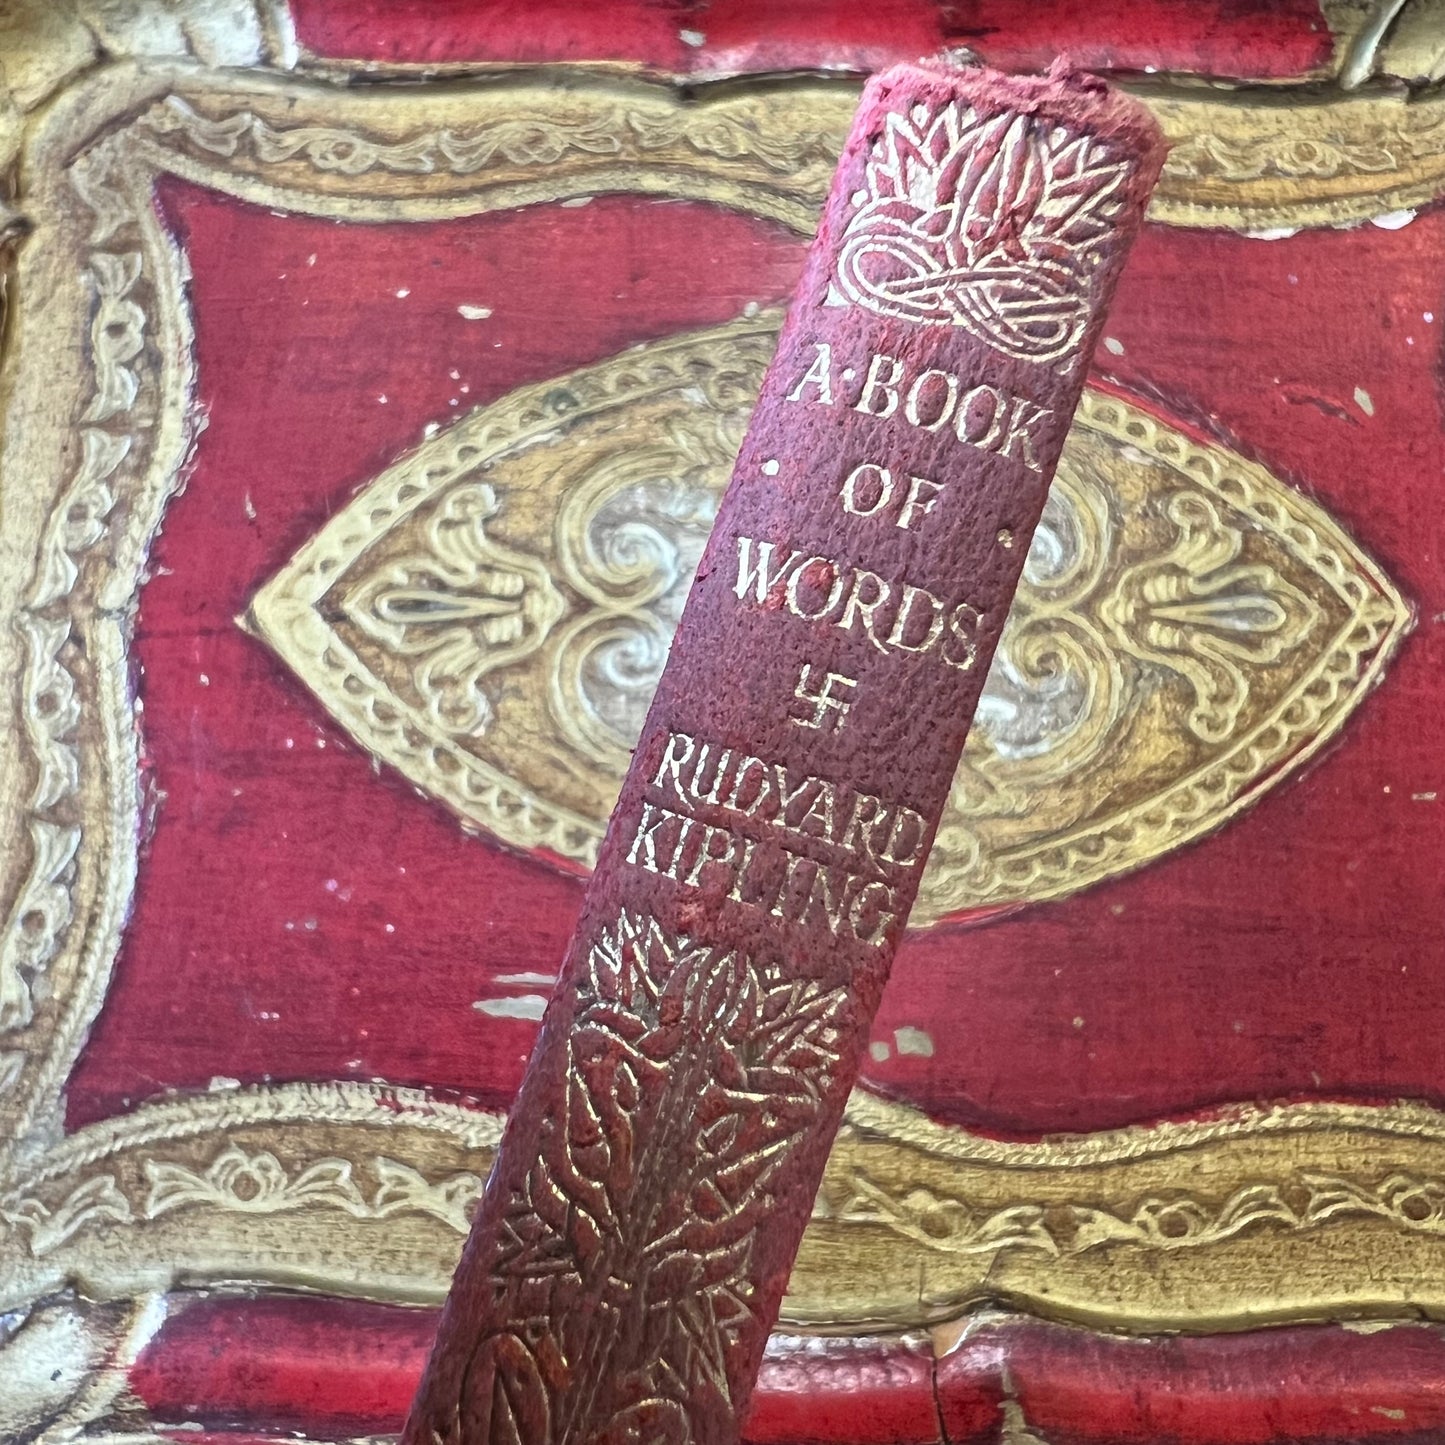 Antique A Book of Words by Rudyard Kipling 1928